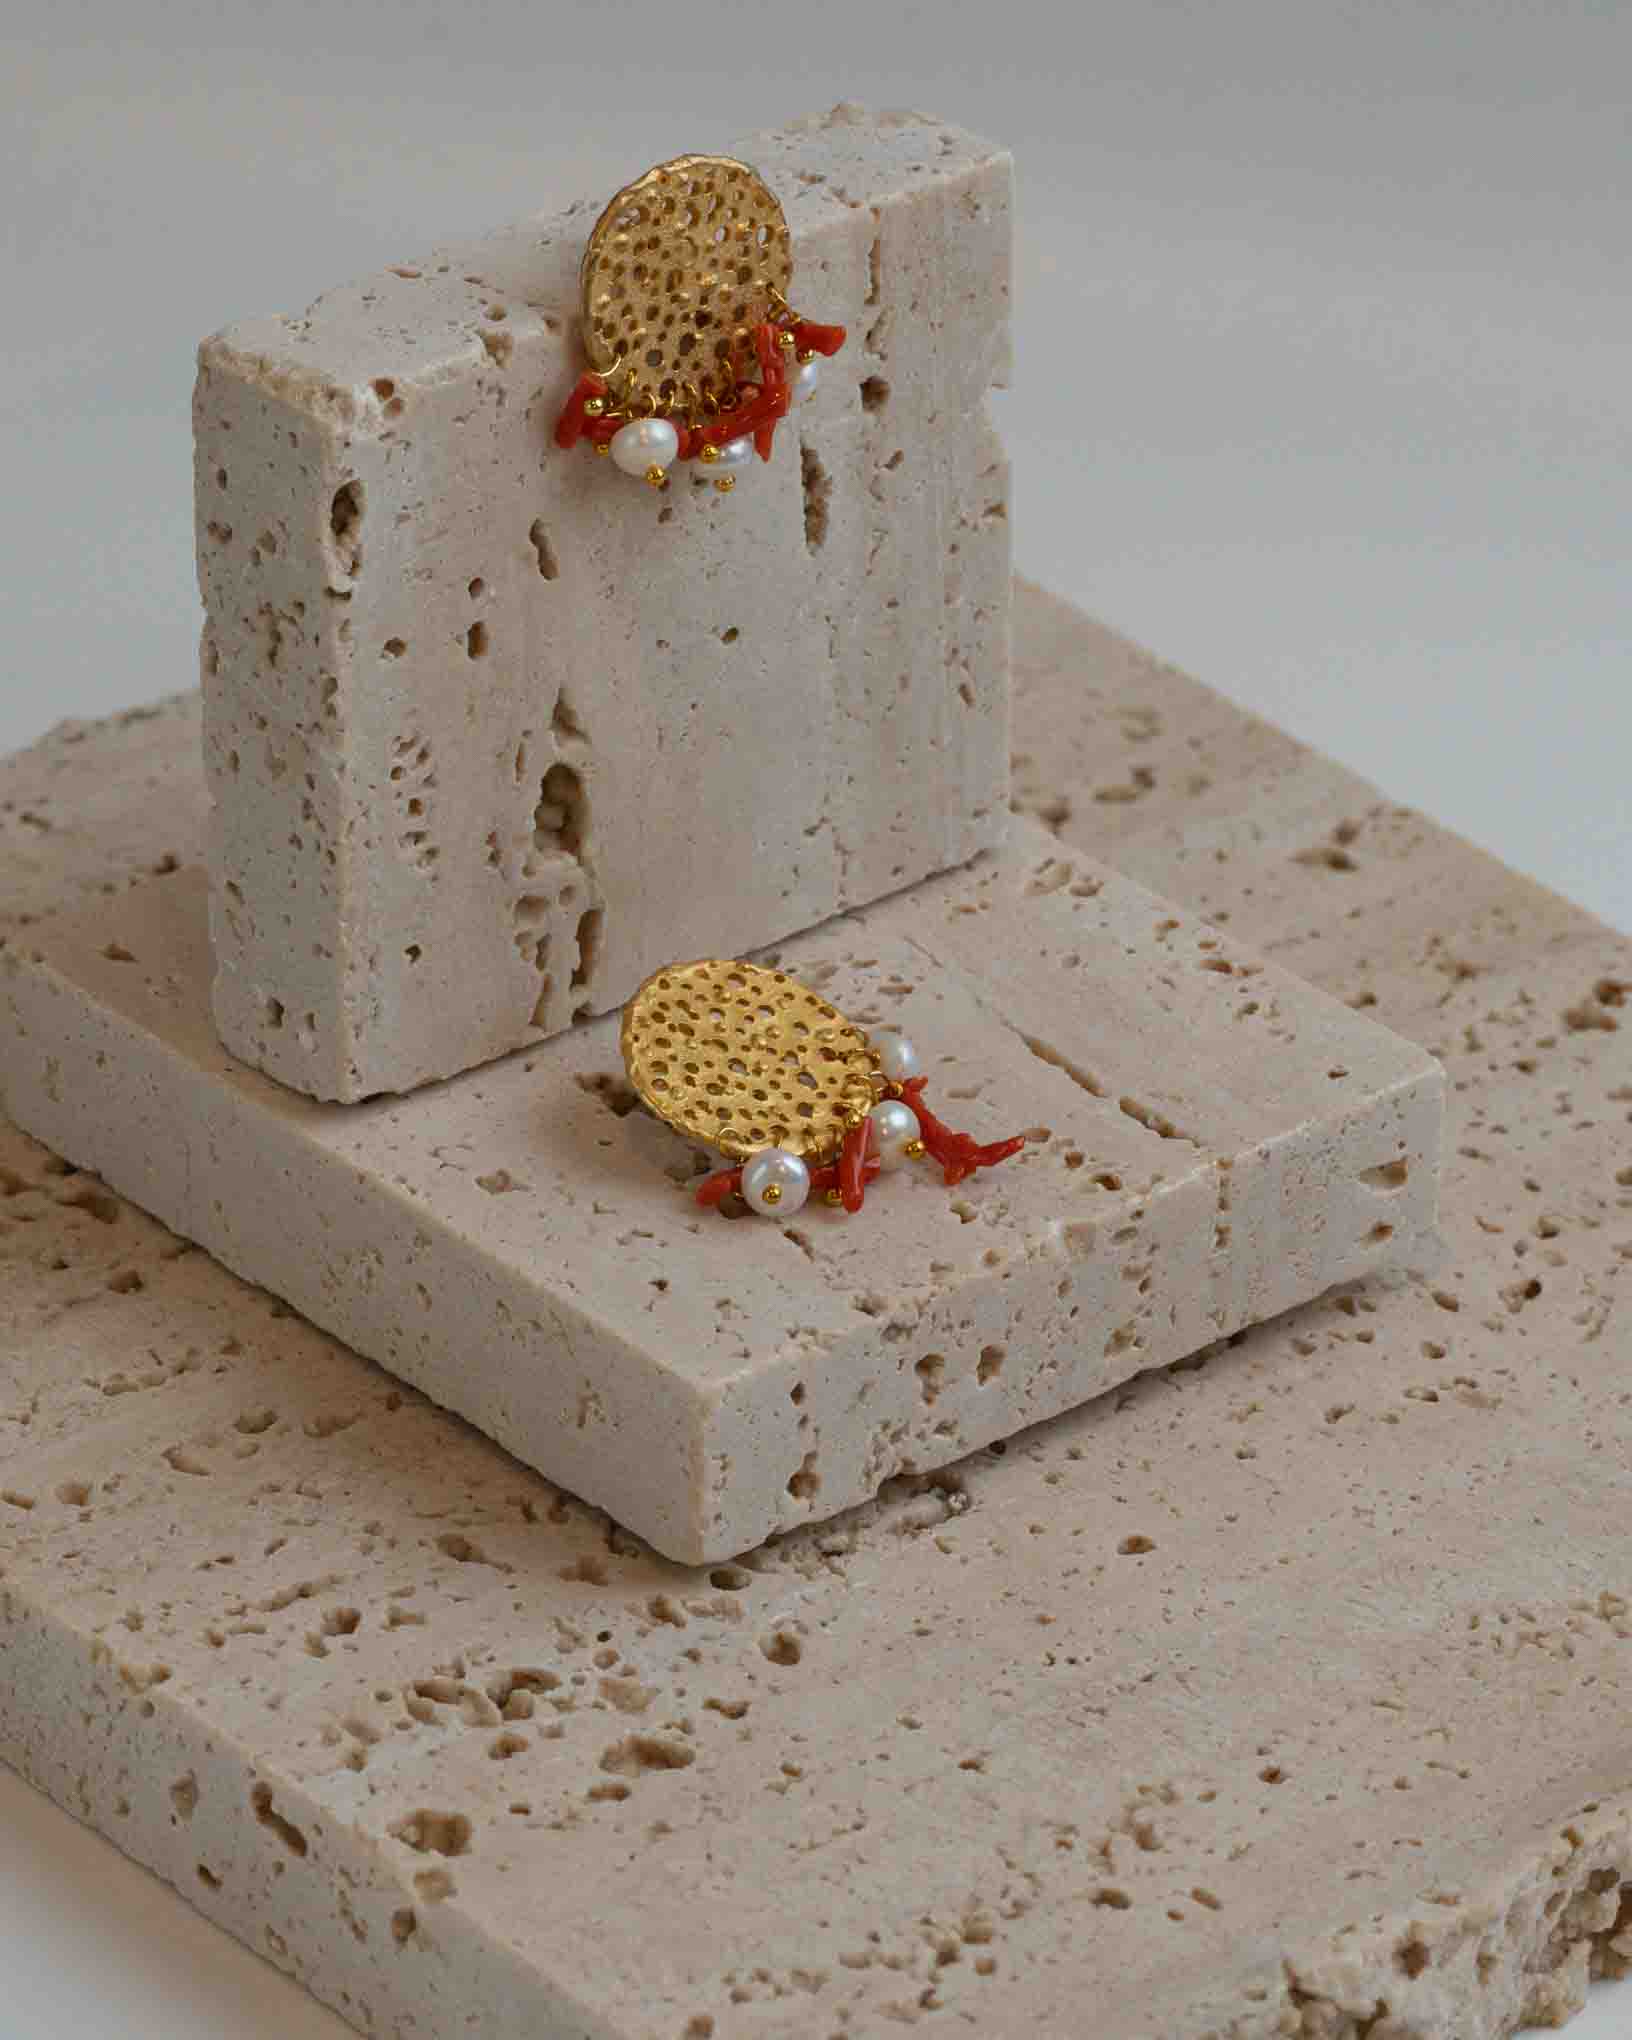 Ohrring Scirocco aus der Kollektion Perle e Coralli von Donna Rachele Jewelry